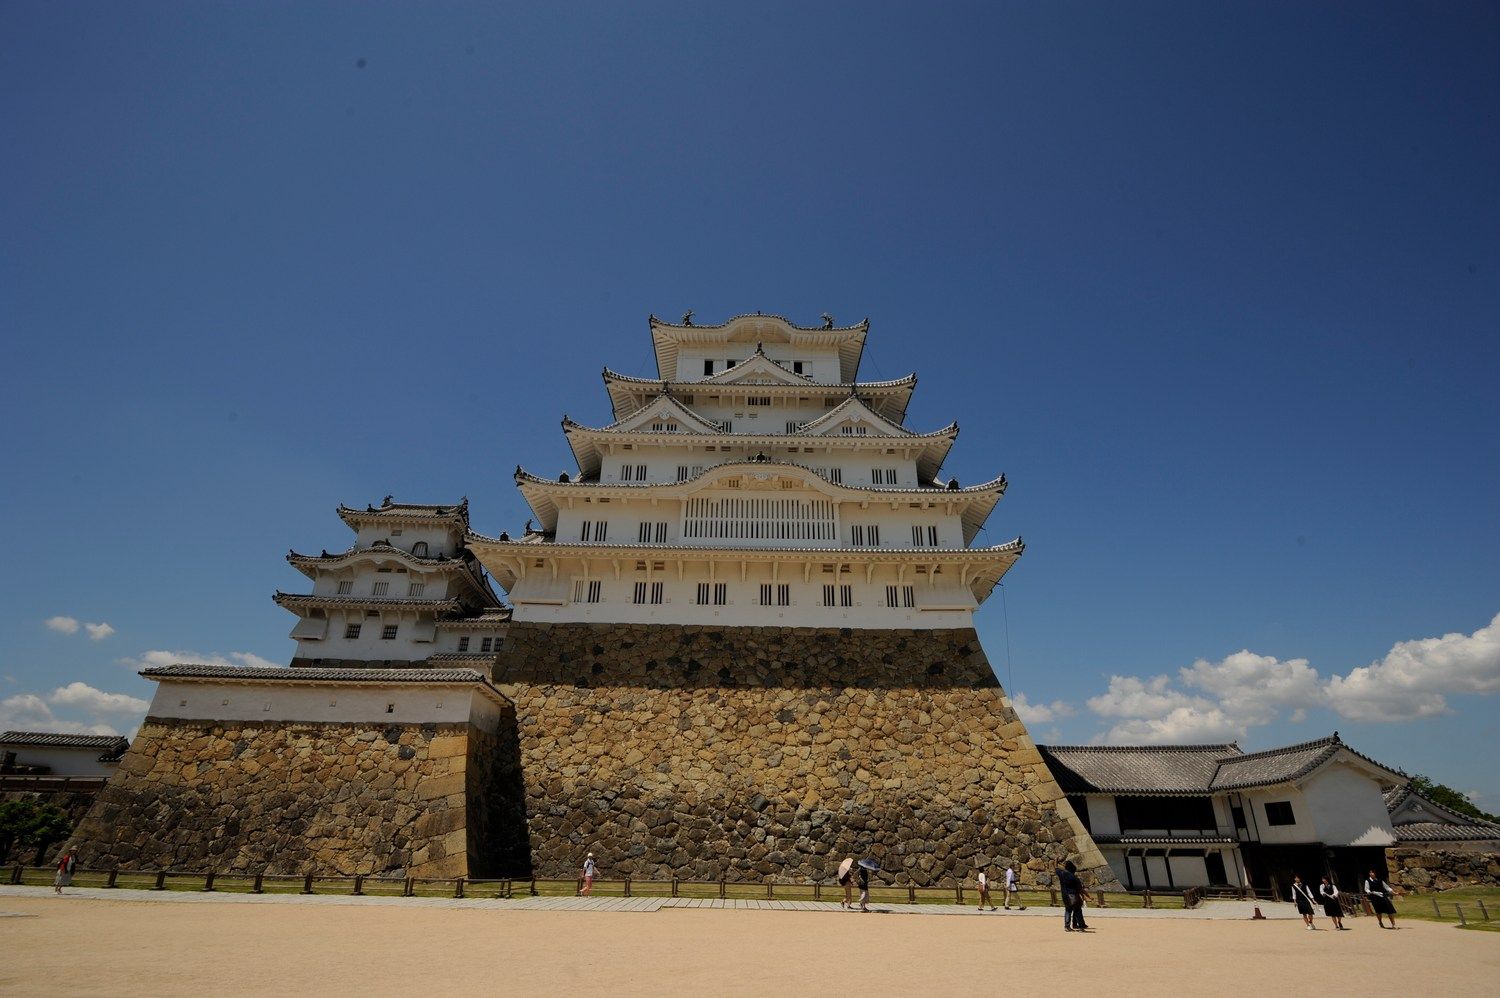 Au japon aussi, il y a des châteaux (et des poulpes géants qui chantent)